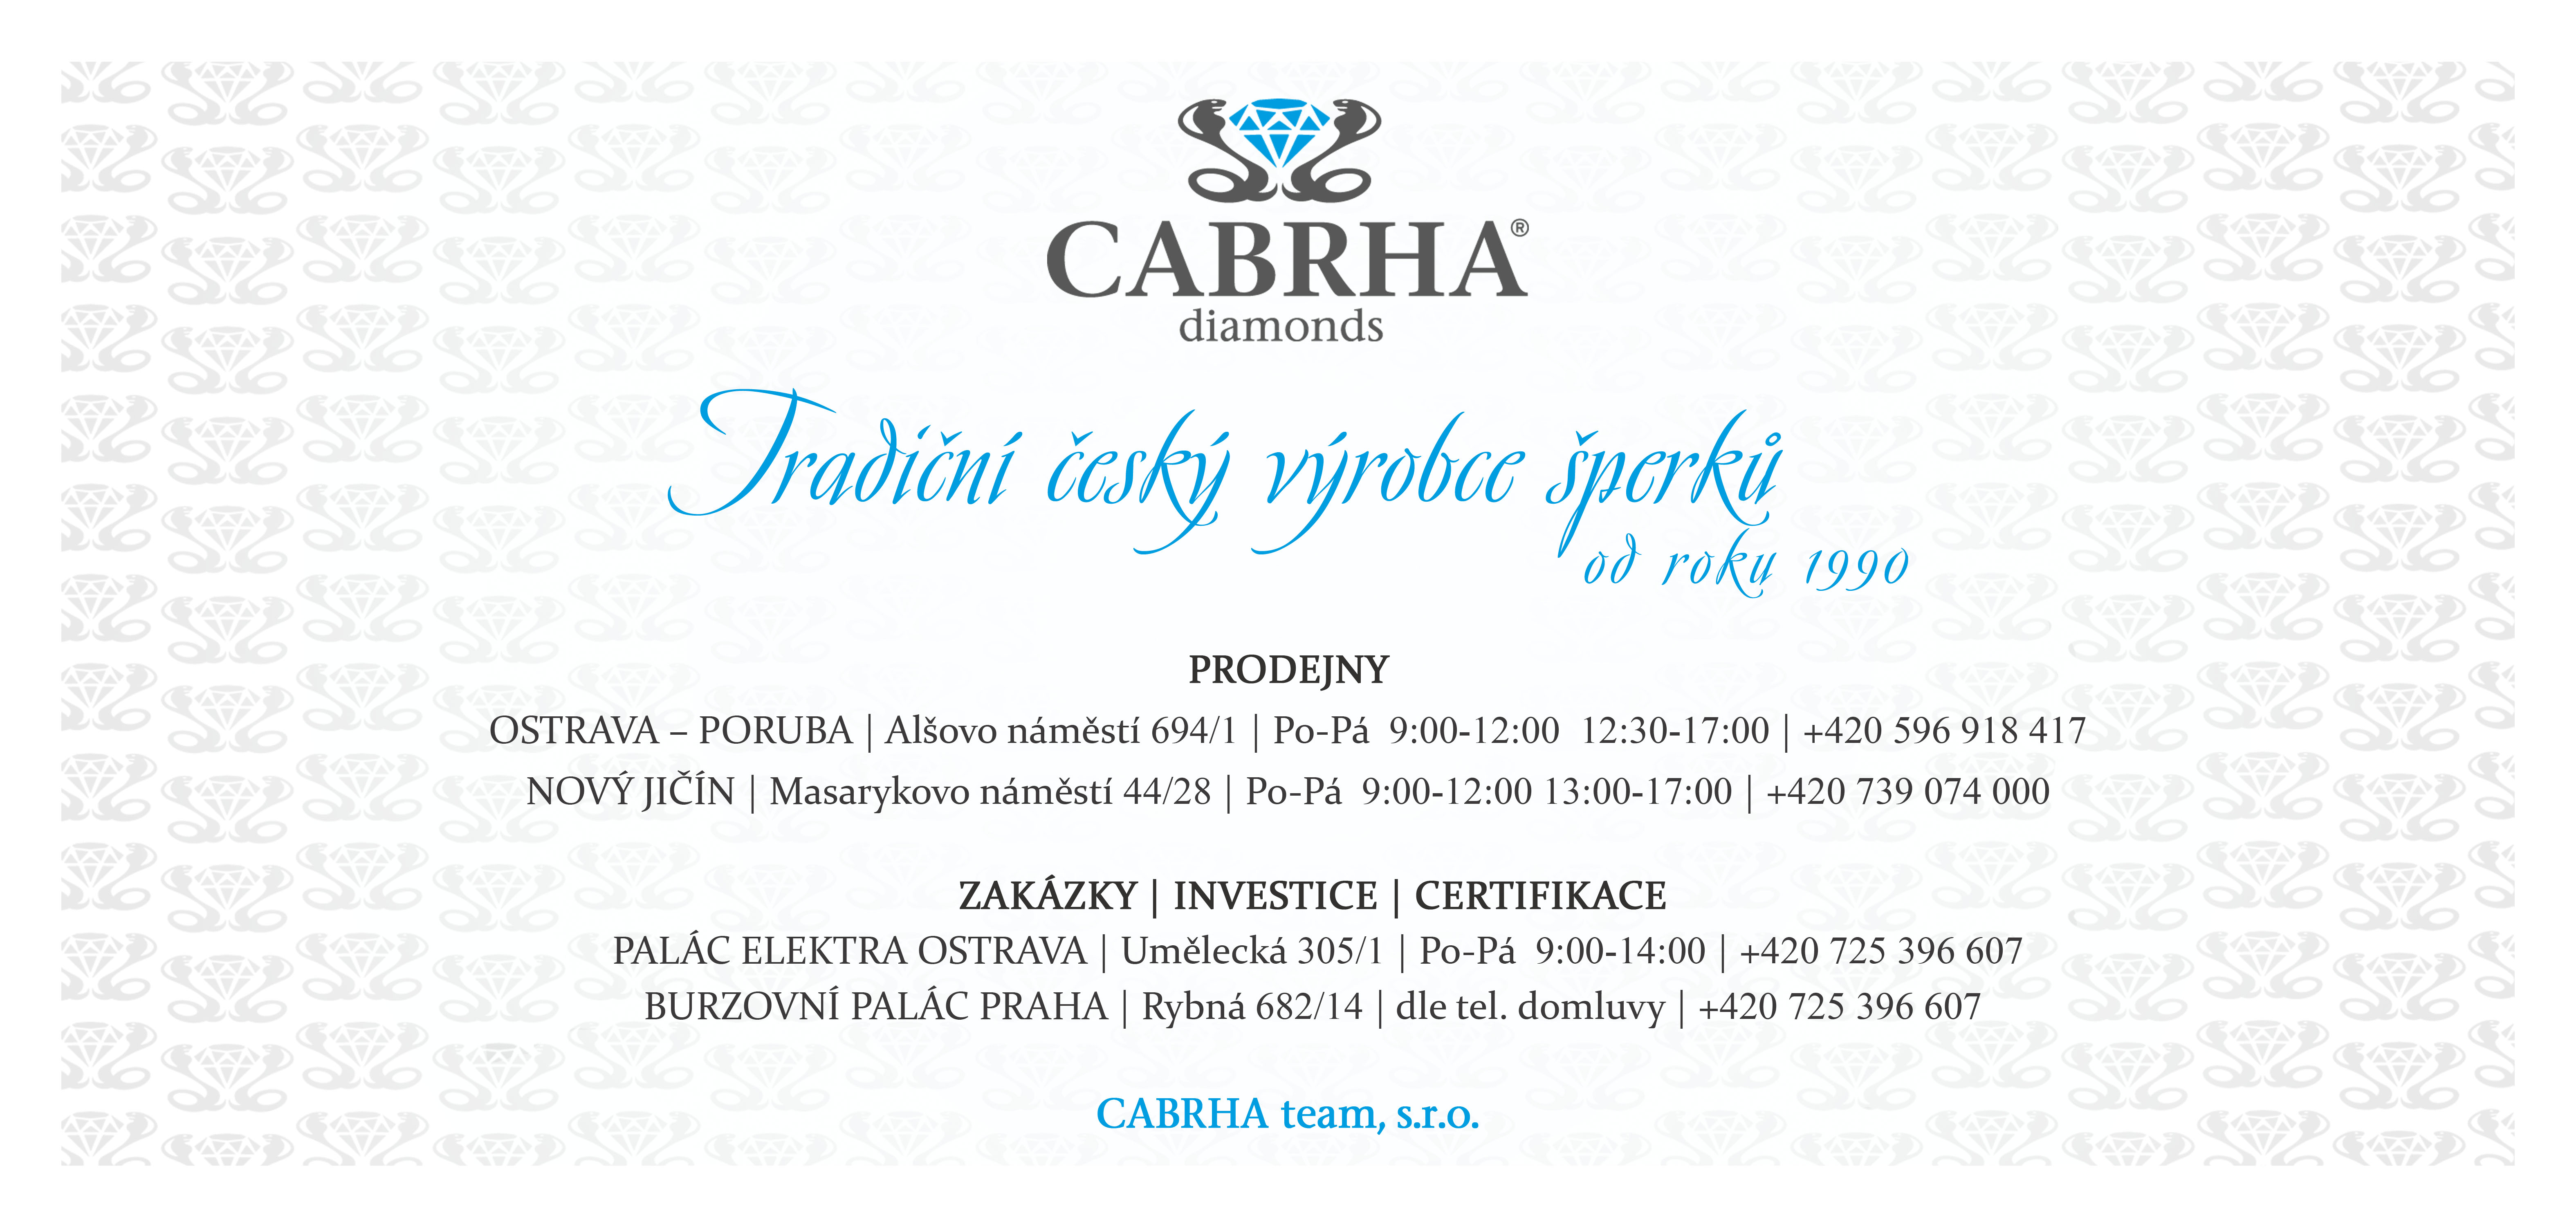 Dárkový poukaz CABRHA diamonds | Prodejny a provozovny